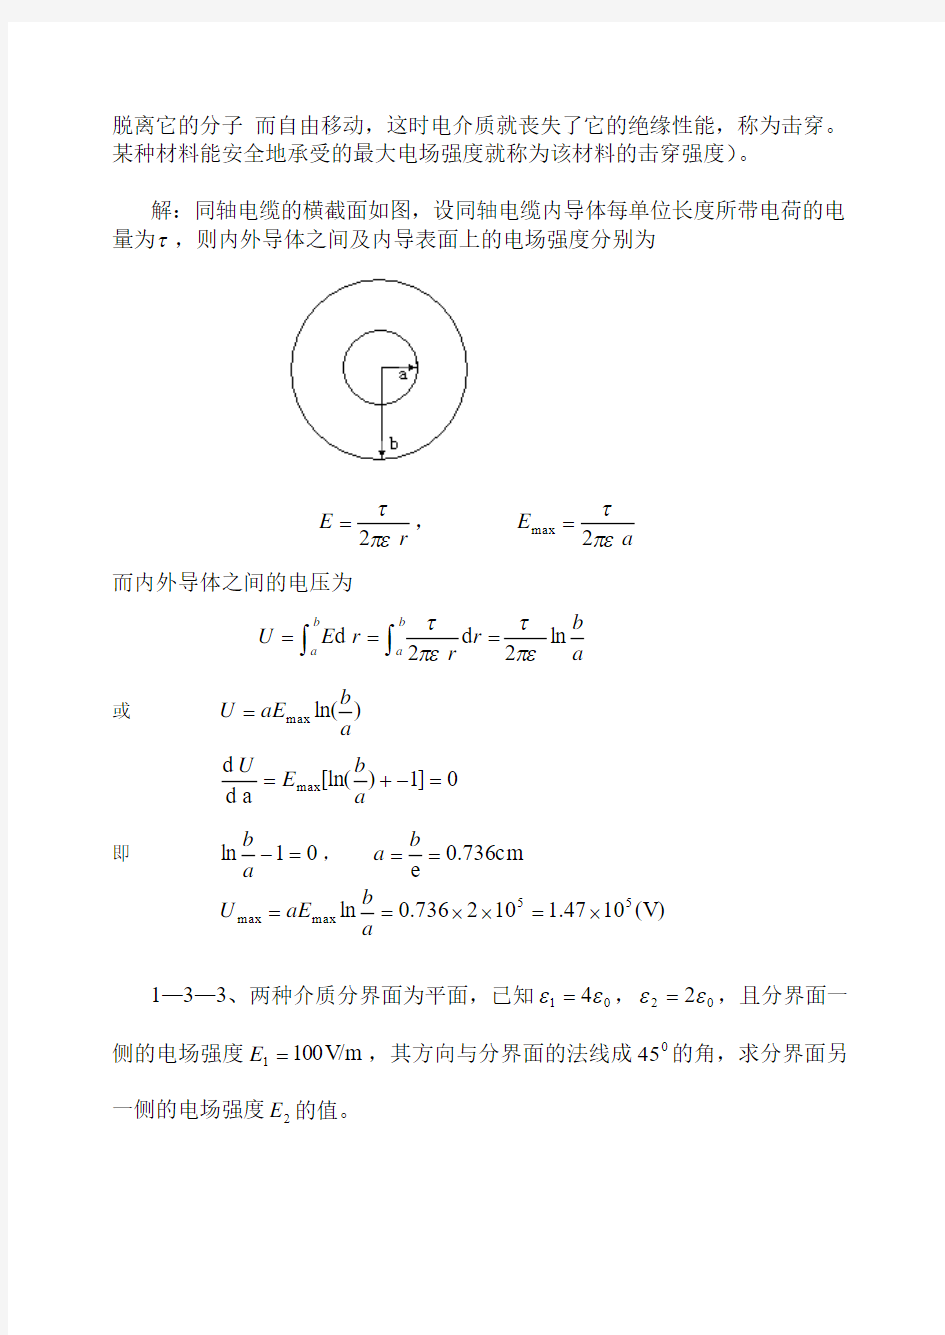 冯慈璋马西奎工程电磁场导论课后重点习题解答